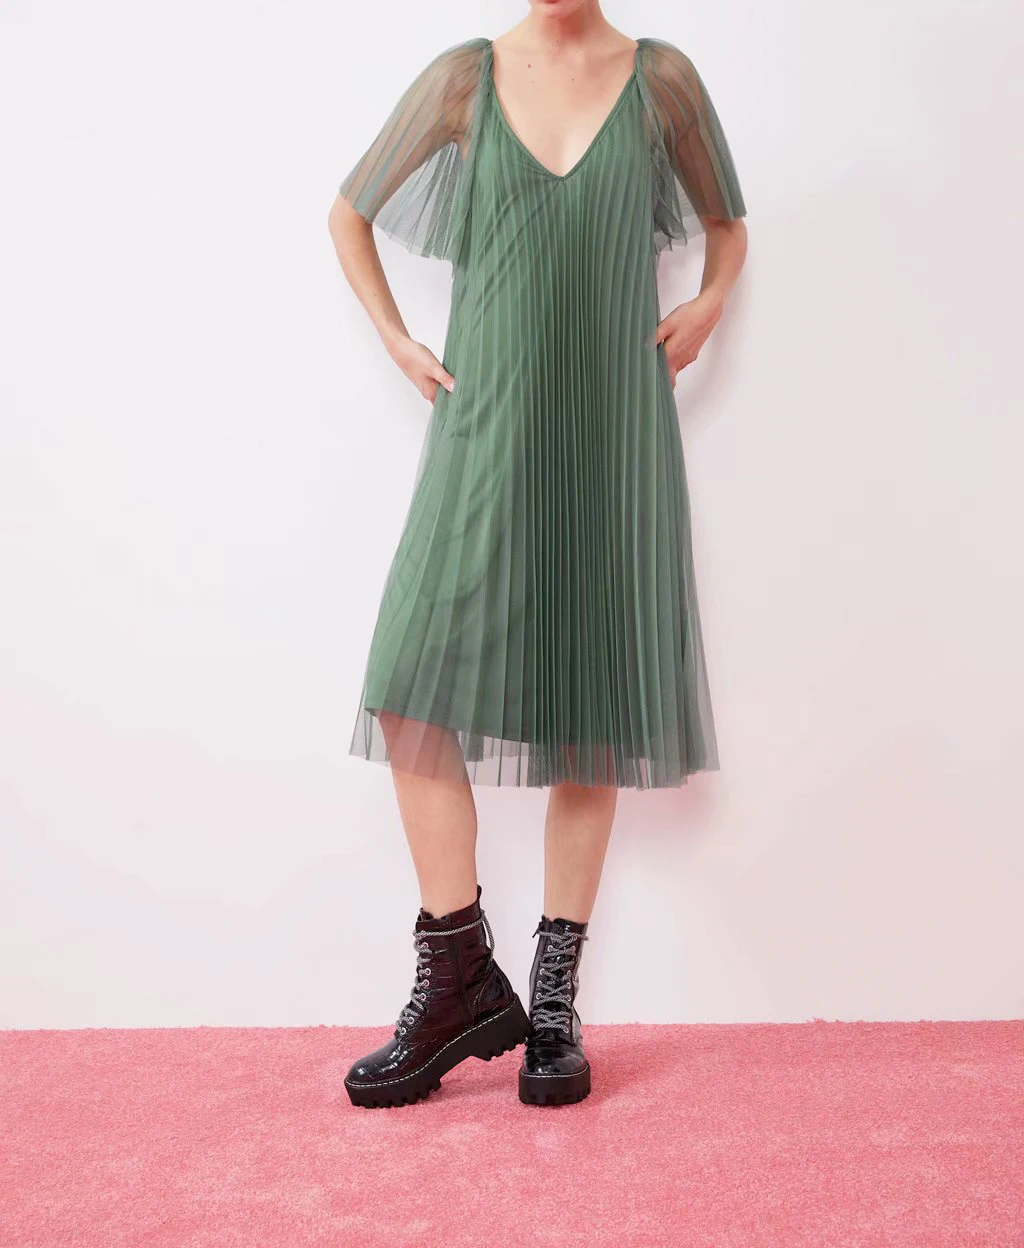 Зеленое женское платье со звездами Светлячок элегантное Плиссированное Сетчатое платье с v-образным вырезом однотонное повседневное пляжное платье офисное женское платье